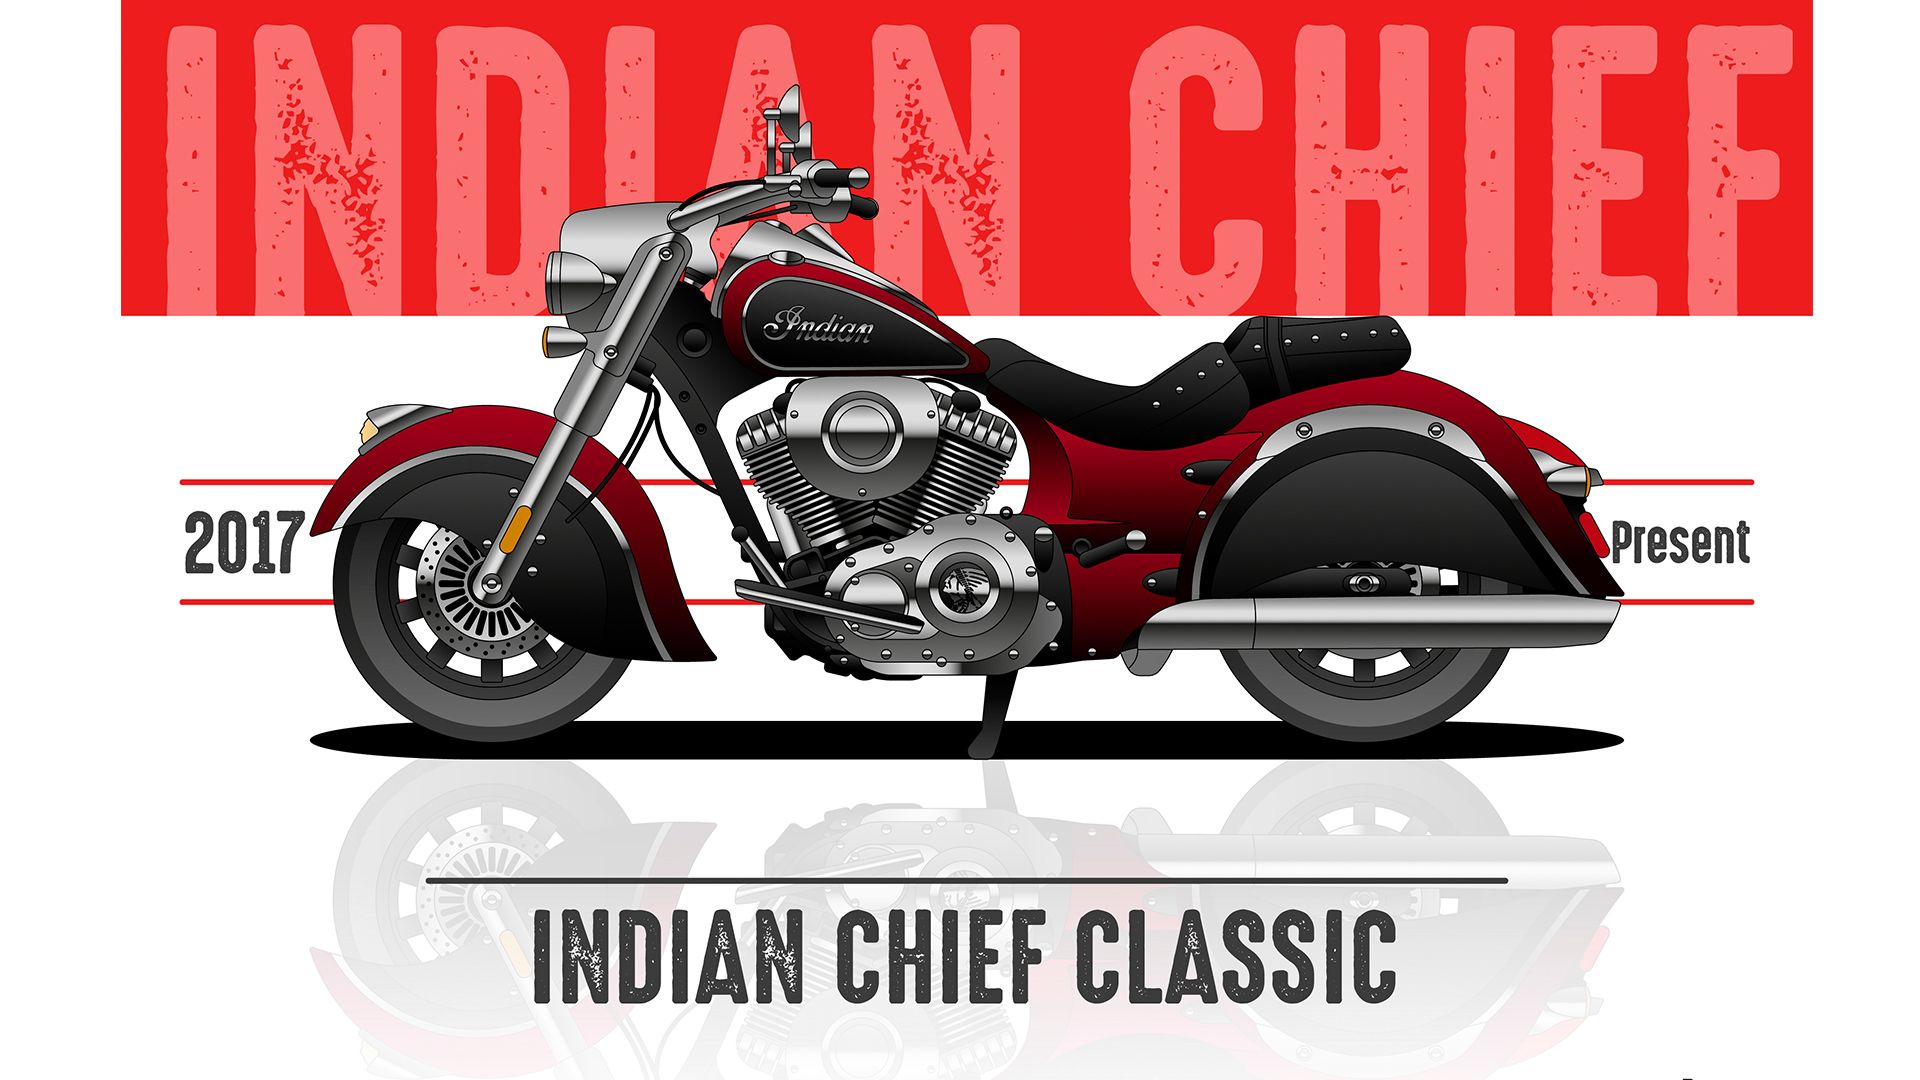 موتورسیکلت ایندین چیف / Indian Chief